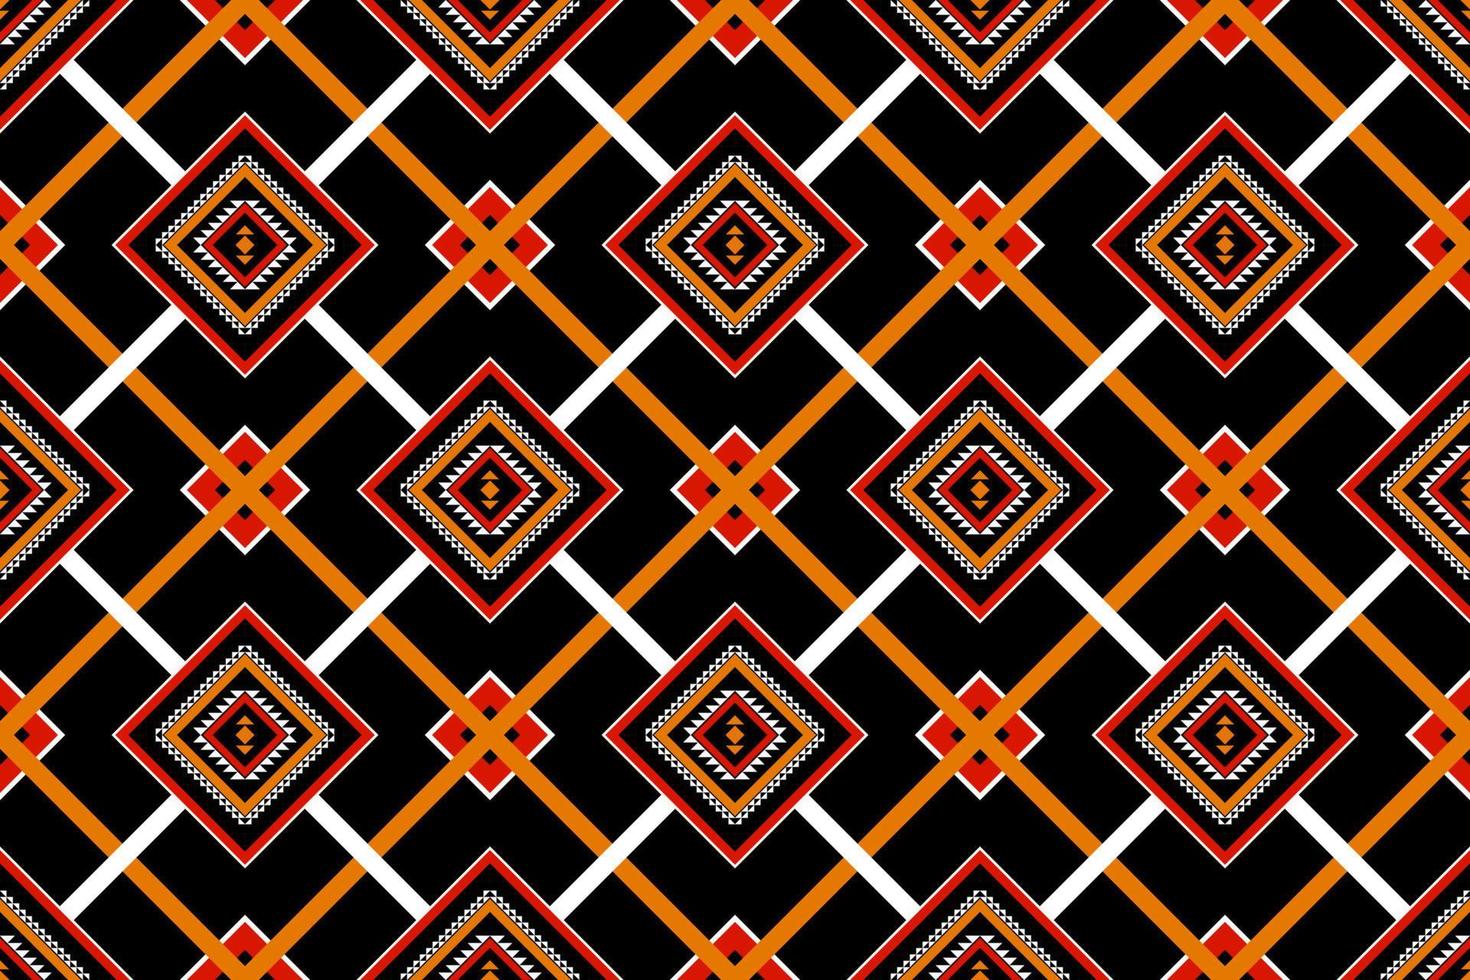 padrão geométrico étnico sem costura tradicional. design para plano de fundo, tapete,papel de parede,vestuário,embrulho,batik,tecido,ilustração,bordado. vetor